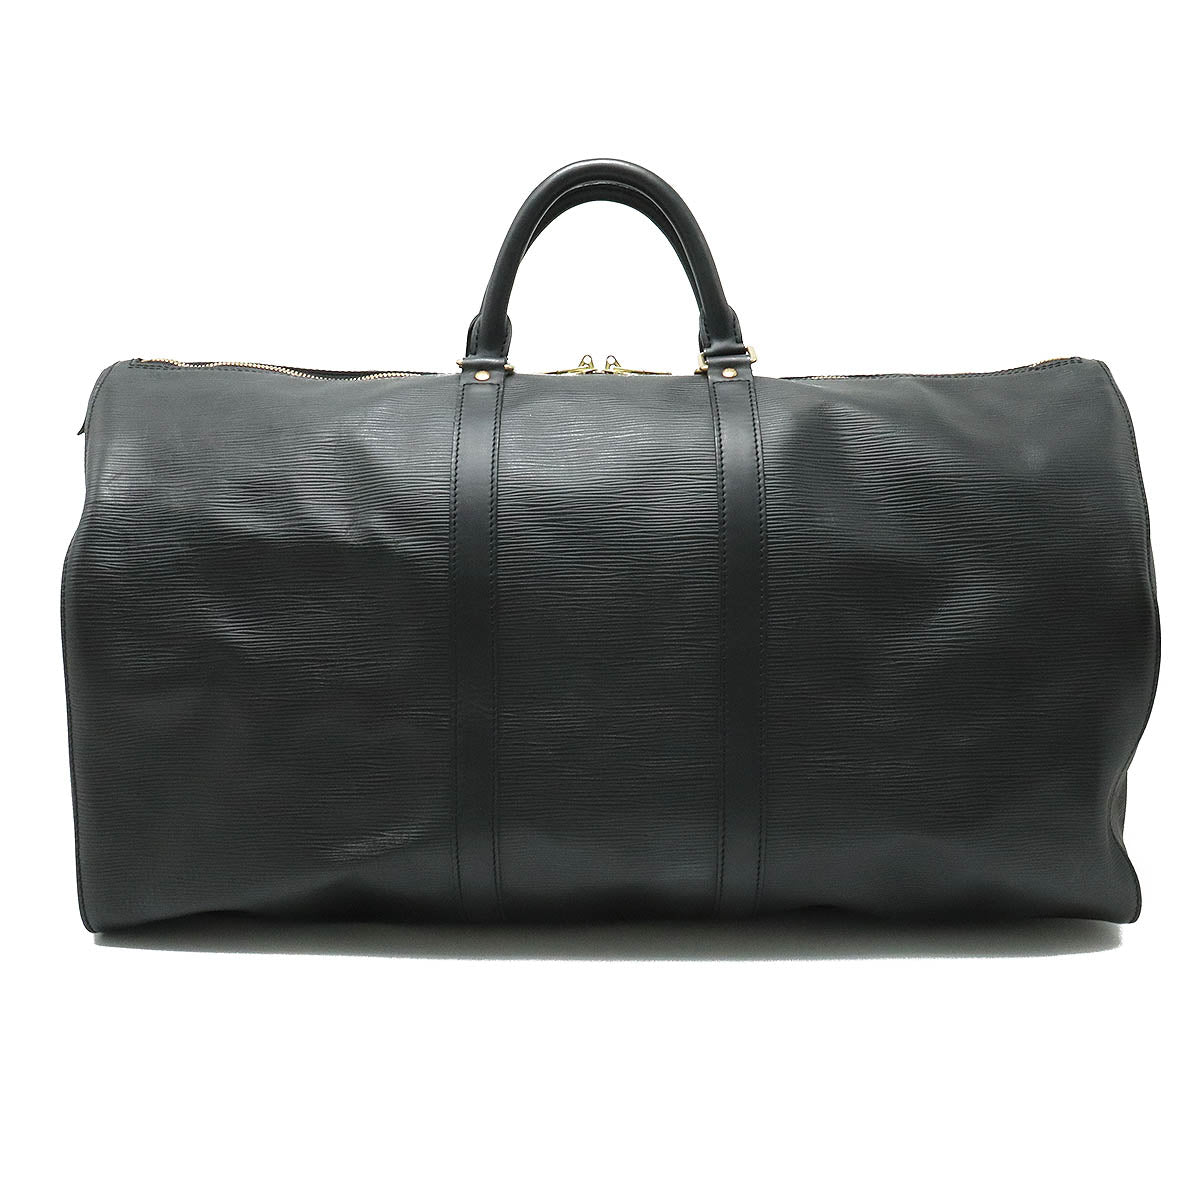 LOUIS VUITTON Louis Vuitton Epic Kypopur 55 Boston Bag Travel Bag Noir Black New M59142